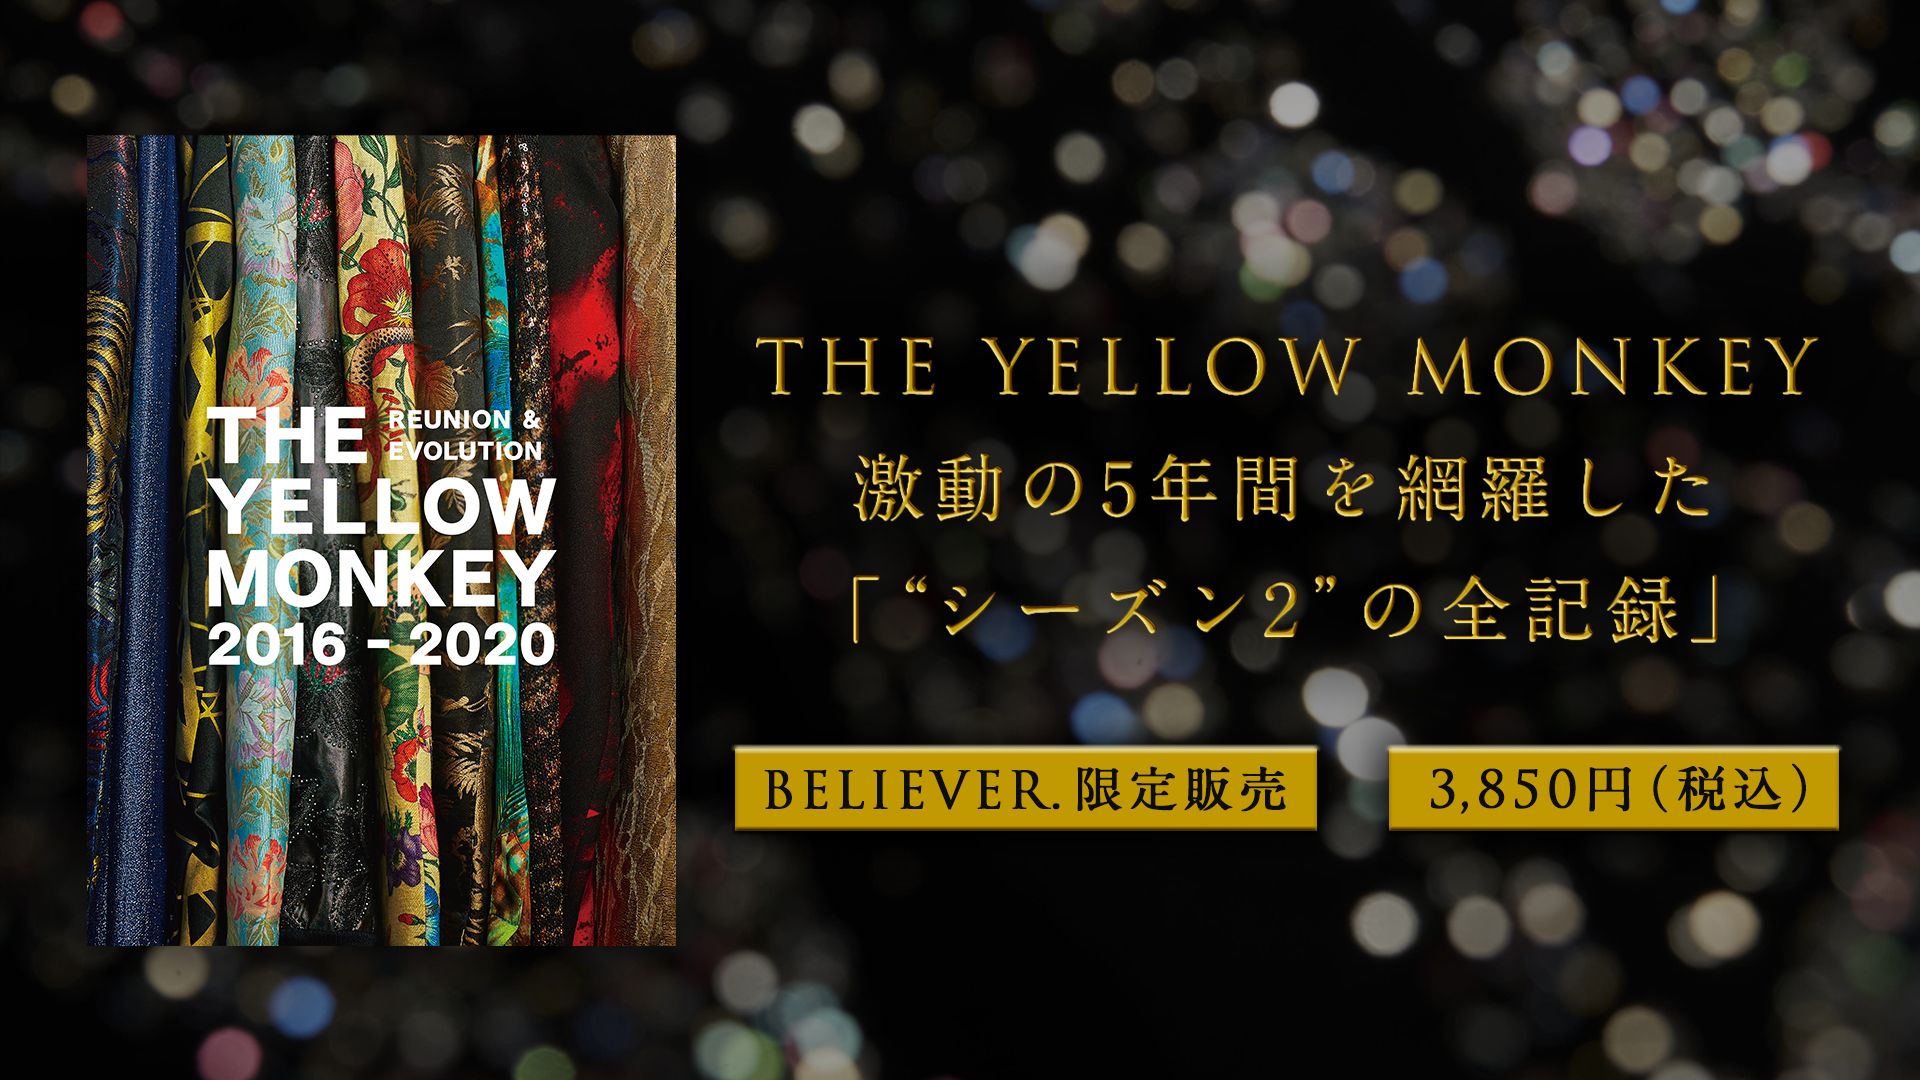 再集結後の活動を網羅した豪華記念本「THE YELLOW MONKEY 2016-2020 REUNION & EVOLUTION」発売決定！